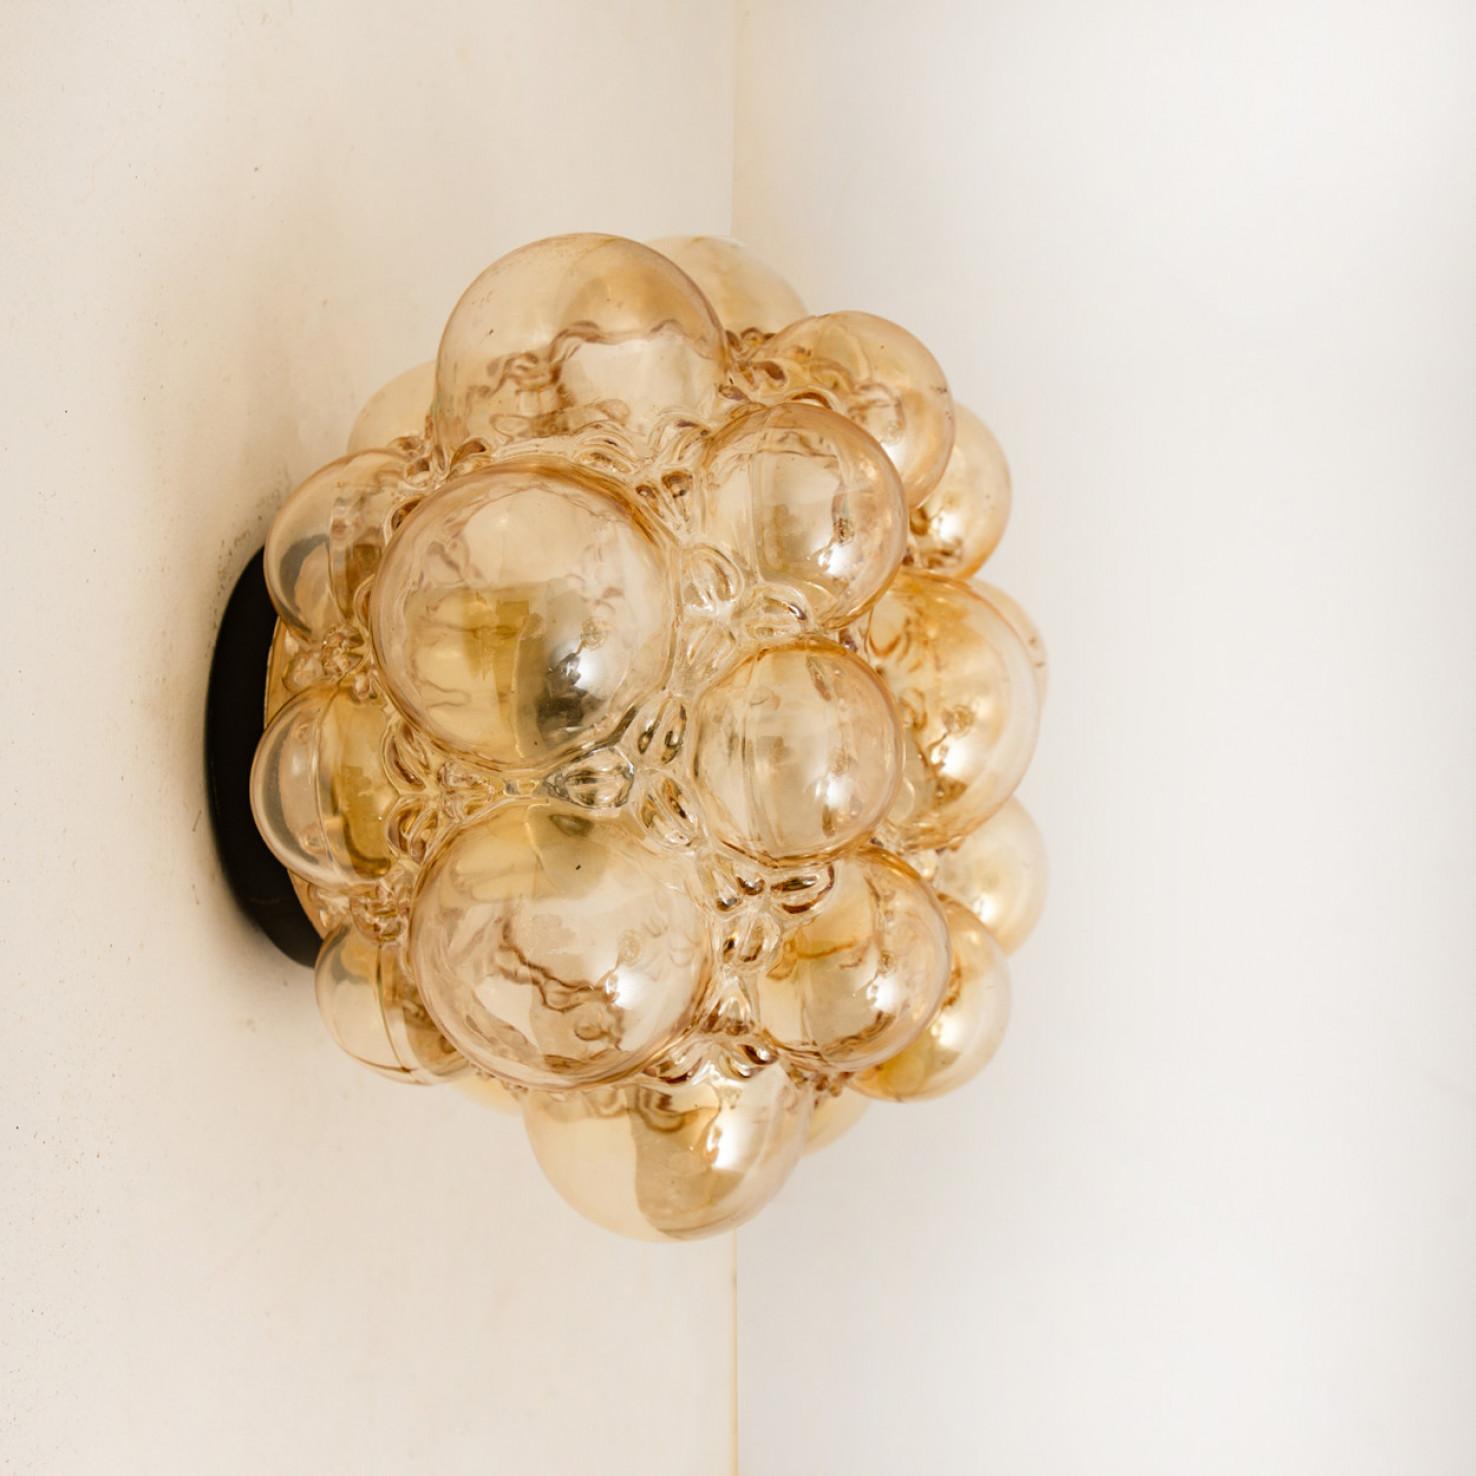 1 des 2 magnifiques luminaires en verre bulle conçus par Helena Tynell pour Glashütte Limburg. Design Classics, le verre soufflé à la main donne une merveilleuse lueur chaude. Illumine magnifiquement le mur et le plafond.

Dimensions des appliques